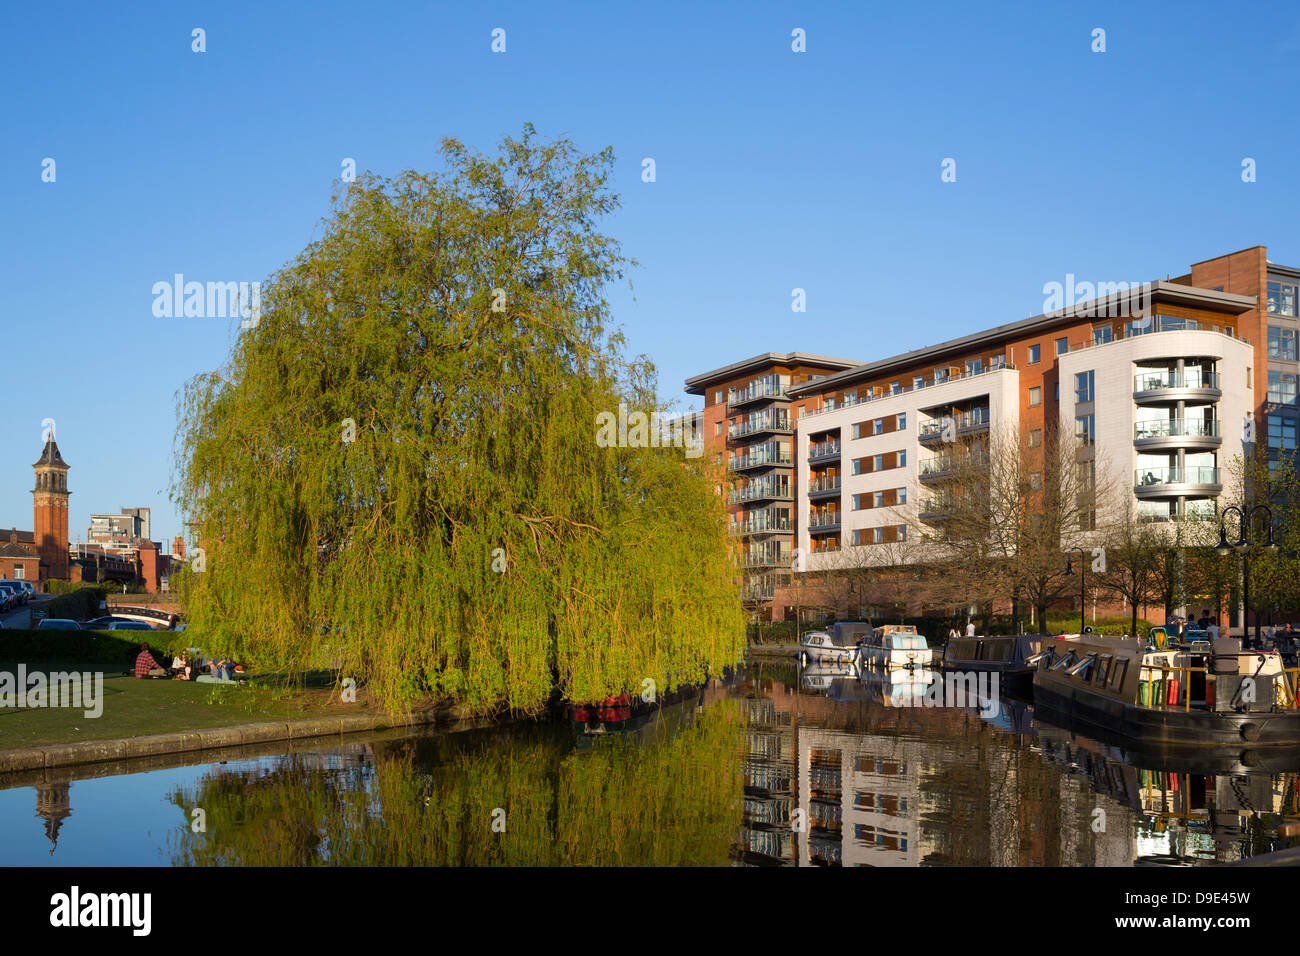 Reino Unido, Manchester, Castlefield, Bridgewater Canal y almacenes convertidos Foto de stock